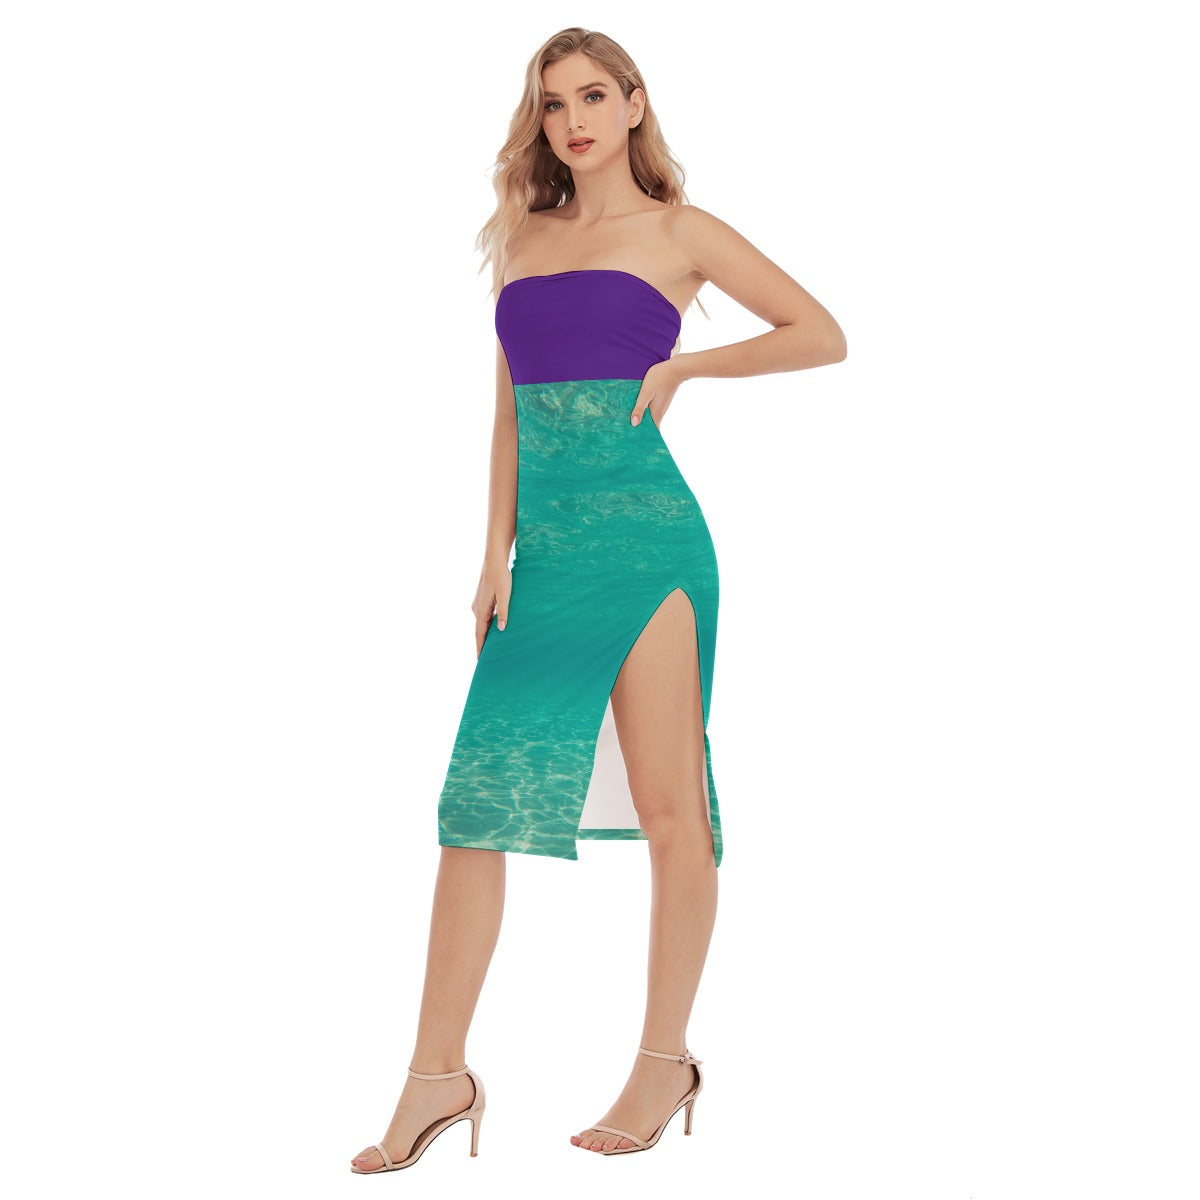 Ariel Strapless Dress - Skinny Fit